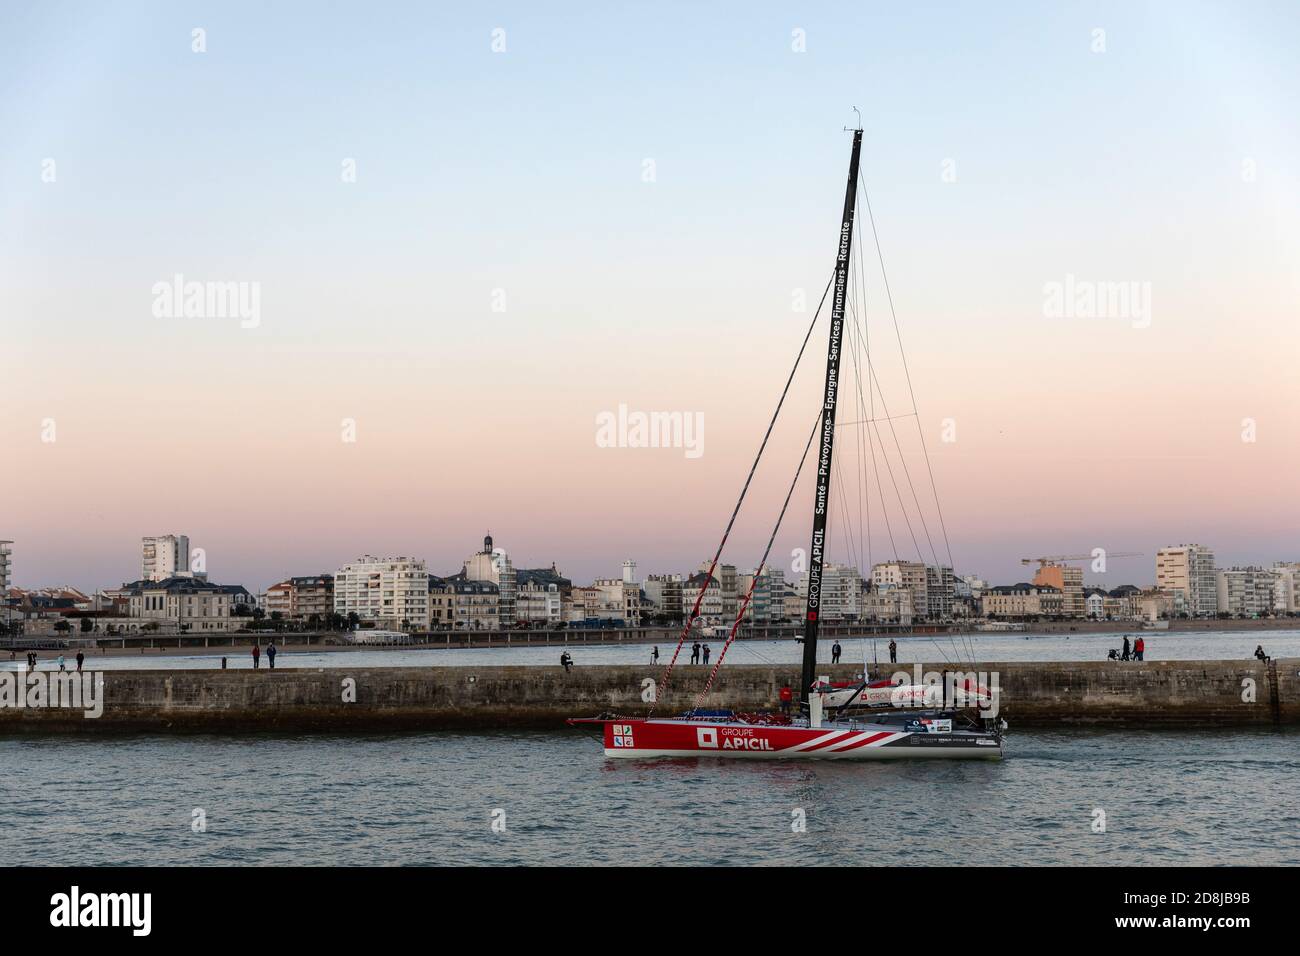 LES SABLES D'OLONNE, FRANCIA - 30 OTTOBRE 2020: Damien Seguin boat (Groupe Apicil) nel canale per il Vendee Globe 2020 il 30,2020 ottobre. Foto Stock